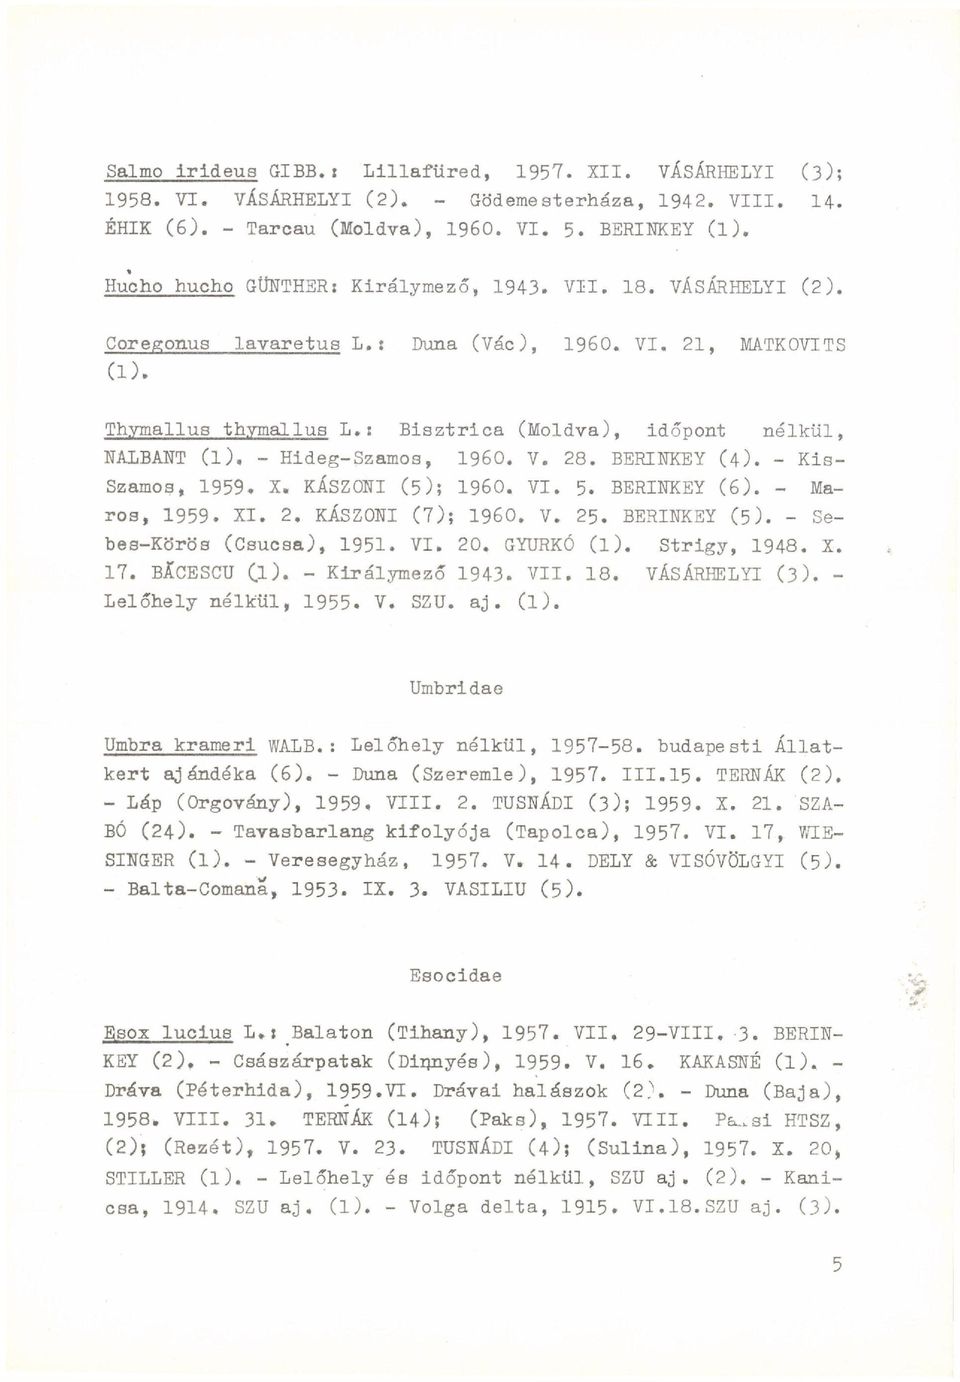 ; Bisztrica (Moldva), időpont nélkül, NALBÁNT (l). - Hideg-Szamos, I960. V. 28. BERINKEY (4). - Kis- Szamos, 1959. X. KÁSZONI (5); I960. VI. 5. BERINKEY (6). - Maros, 1959. XI. 2. KÁSZONI (7); I960.